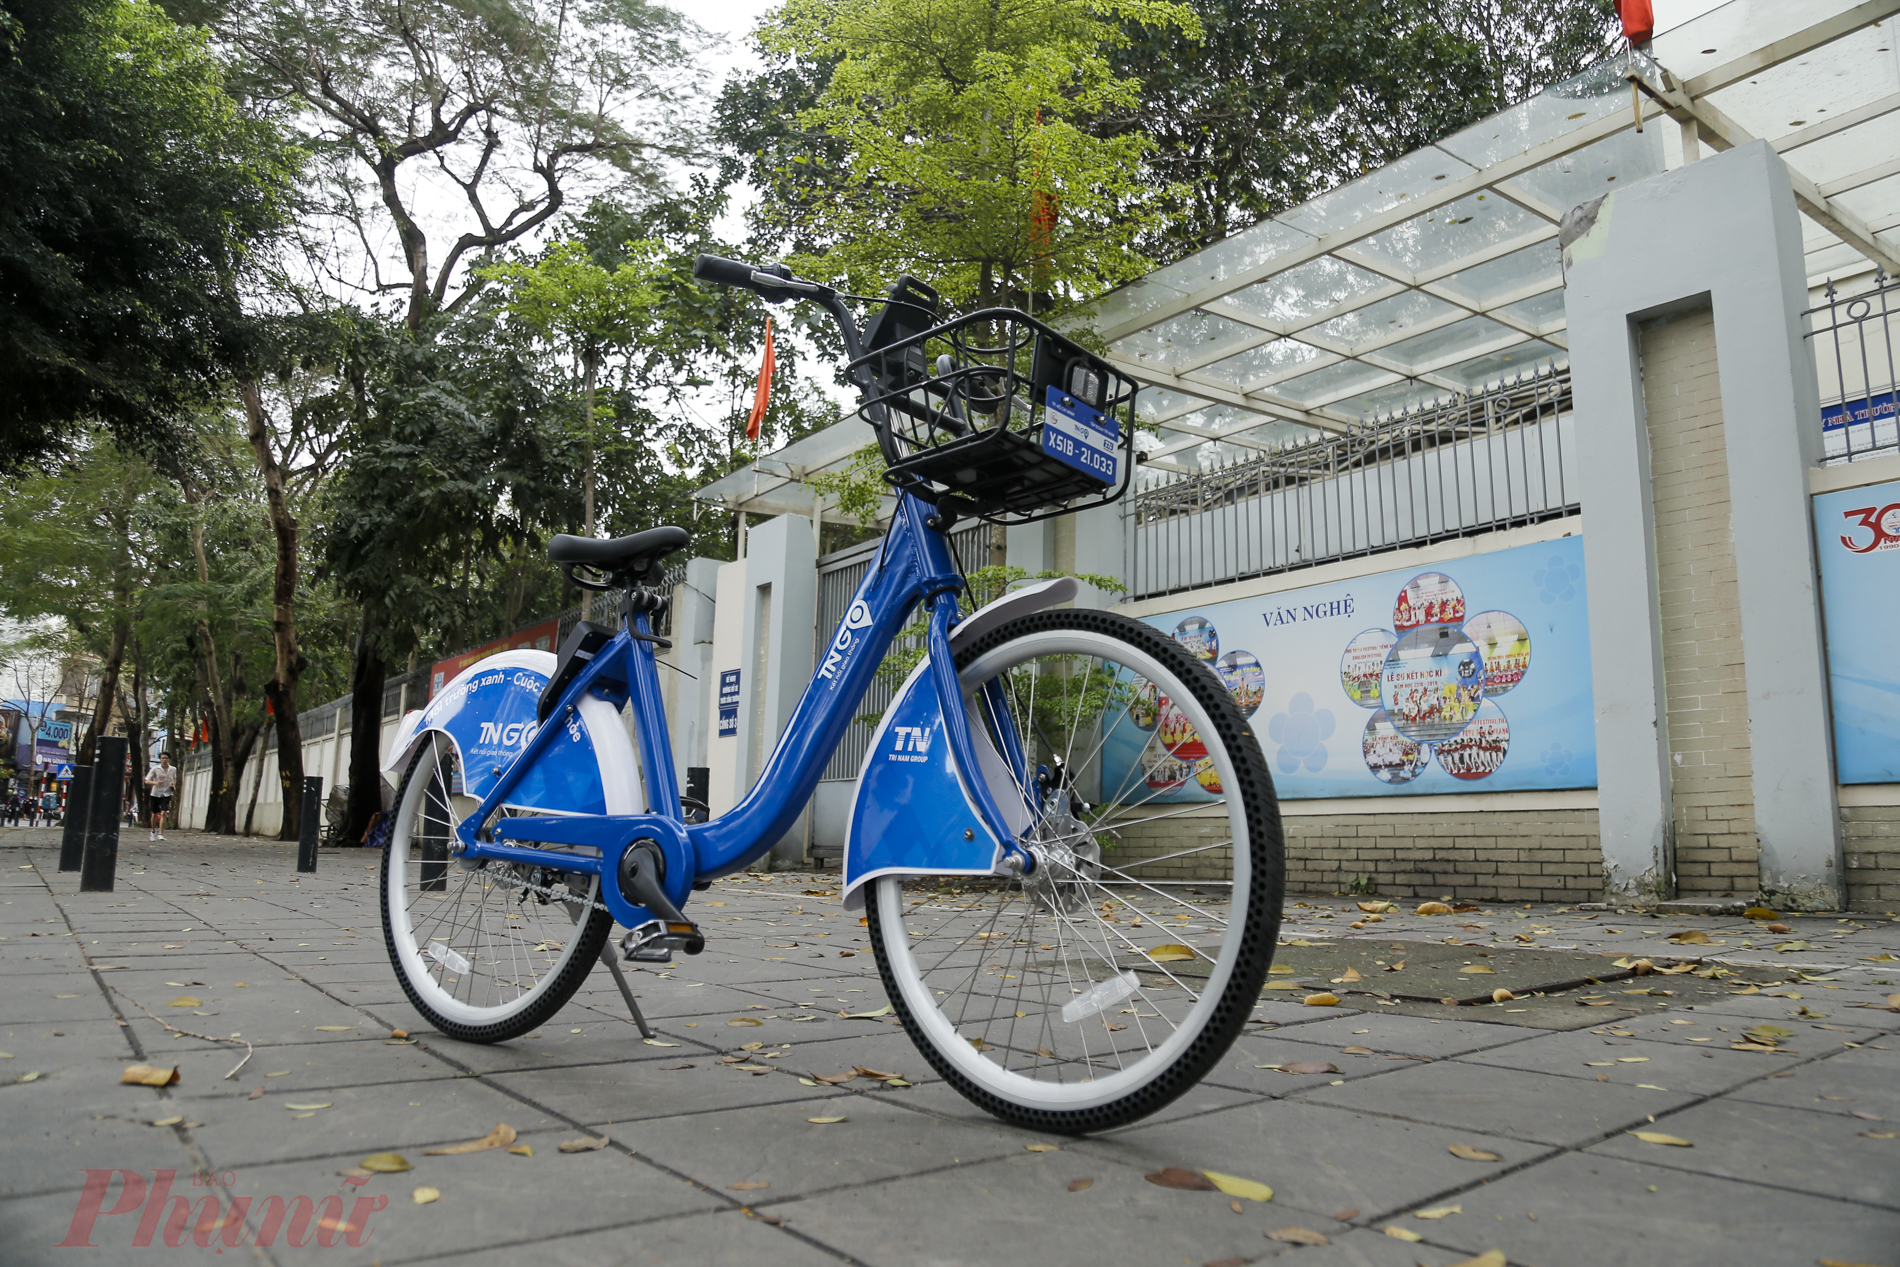 UBND TP. Hà Nội vừa nhất trí giao Sở GTVT Hà Nội xây dựng dự án phát triển xe đạp công cộng để thực hiện tại 6 quận trung tâm. Xe đạp được sử dụng phục vụ người dân tại 6 quận trung tâm bao gồm đạp truyền thống, xe điện 2 bánh.